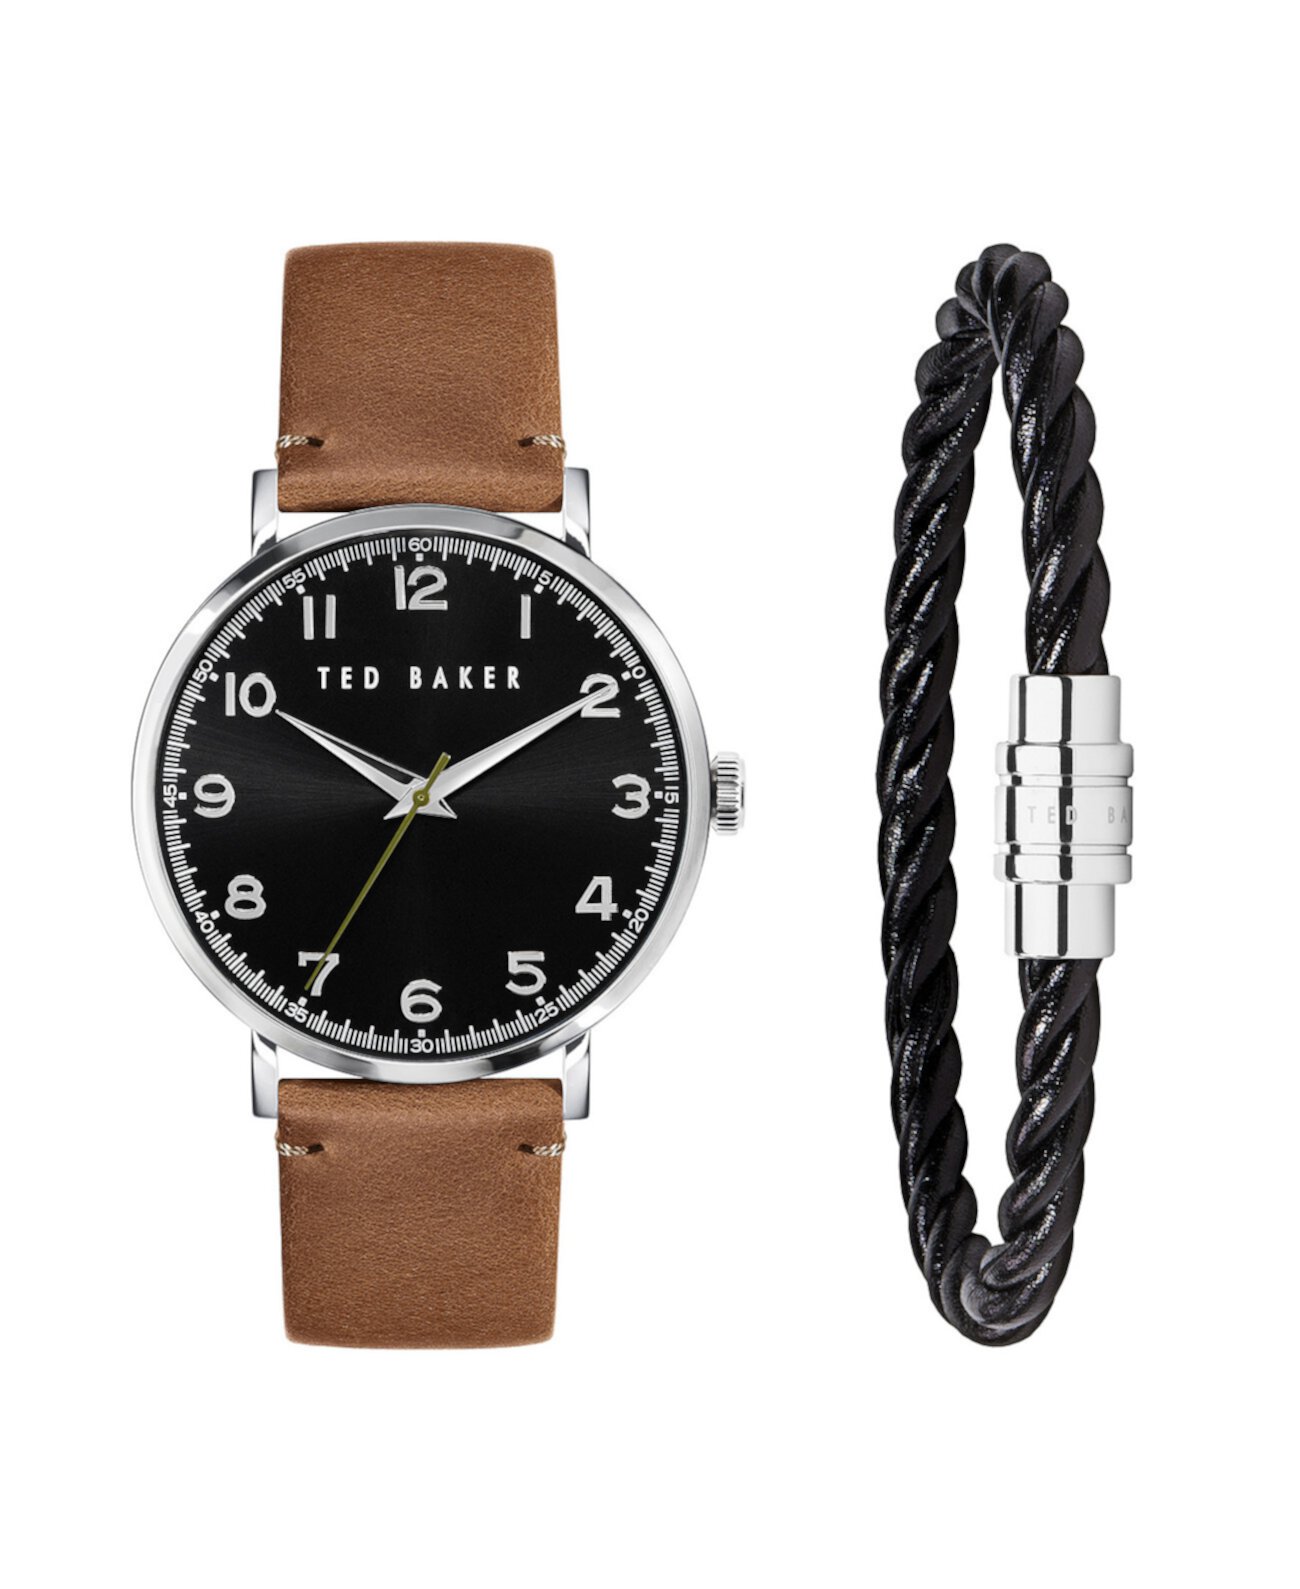 Подарочный набор мужских часов Phylipa с коричневым кожаным ремешком 43 мм и браслетом, 2 предмета Ted Baker